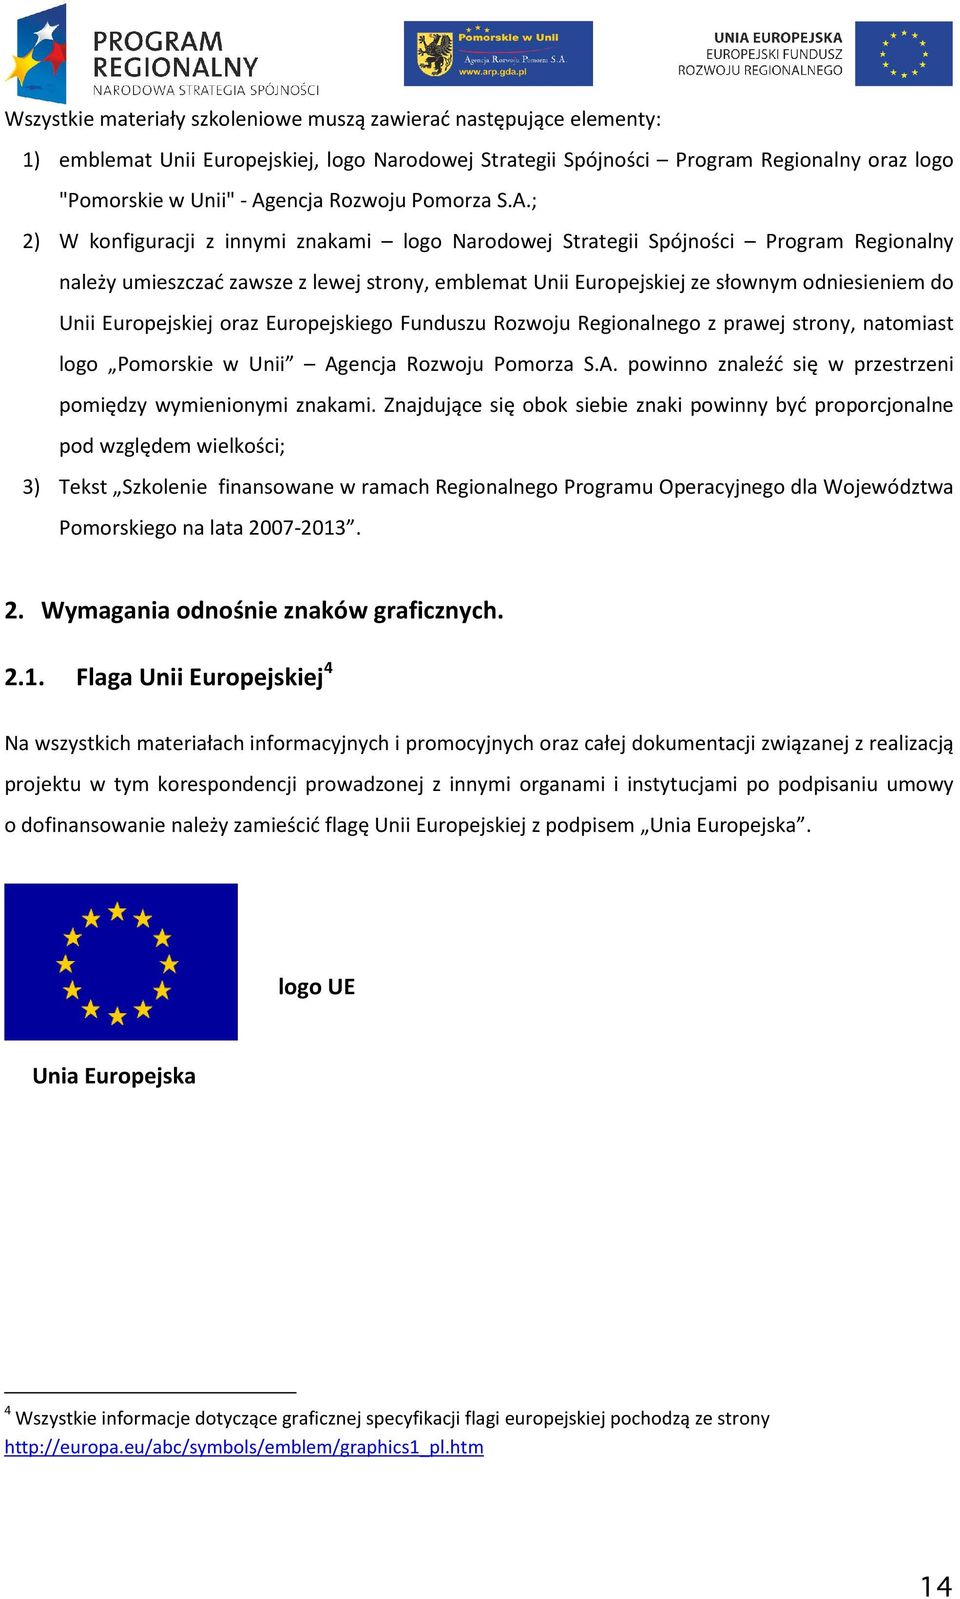 ; 2) W konfiguracji z innymi znakami logo Narodowej Strategii Spójności Program Regionalny należy umieszczać zawsze z lewej strony, emblemat Unii Europejskiej ze słownym odniesieniem do Unii